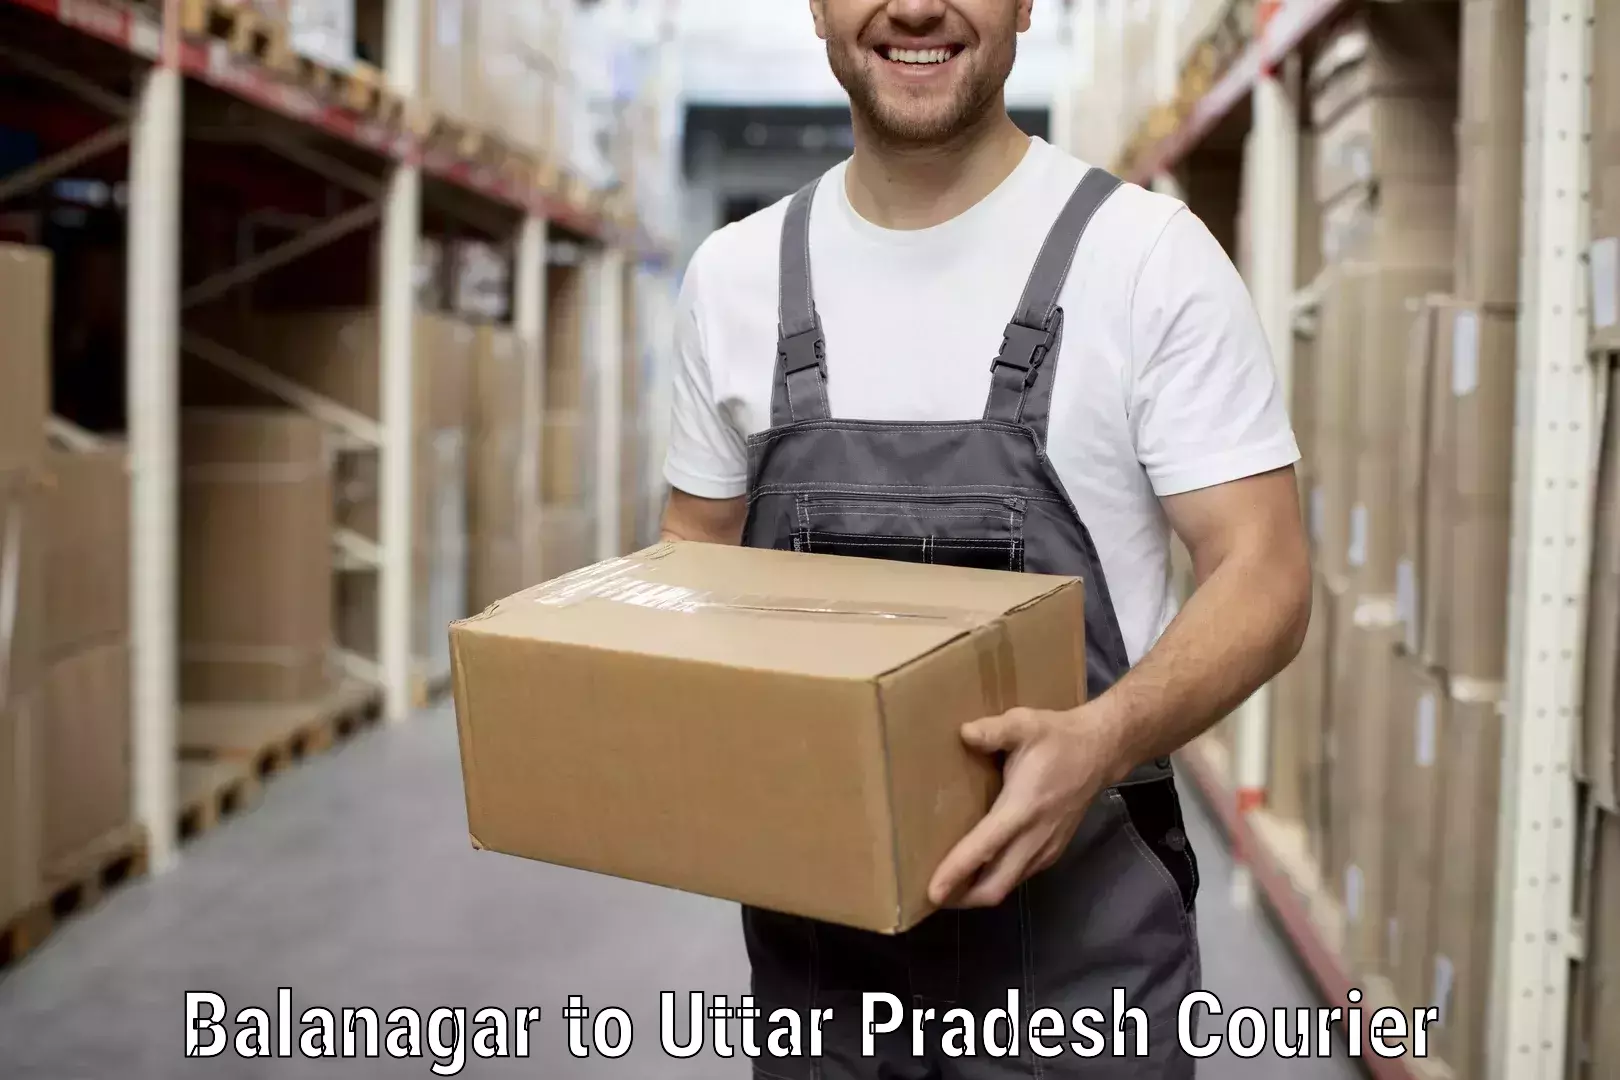 Moving and handling services Balanagar to Allahabad